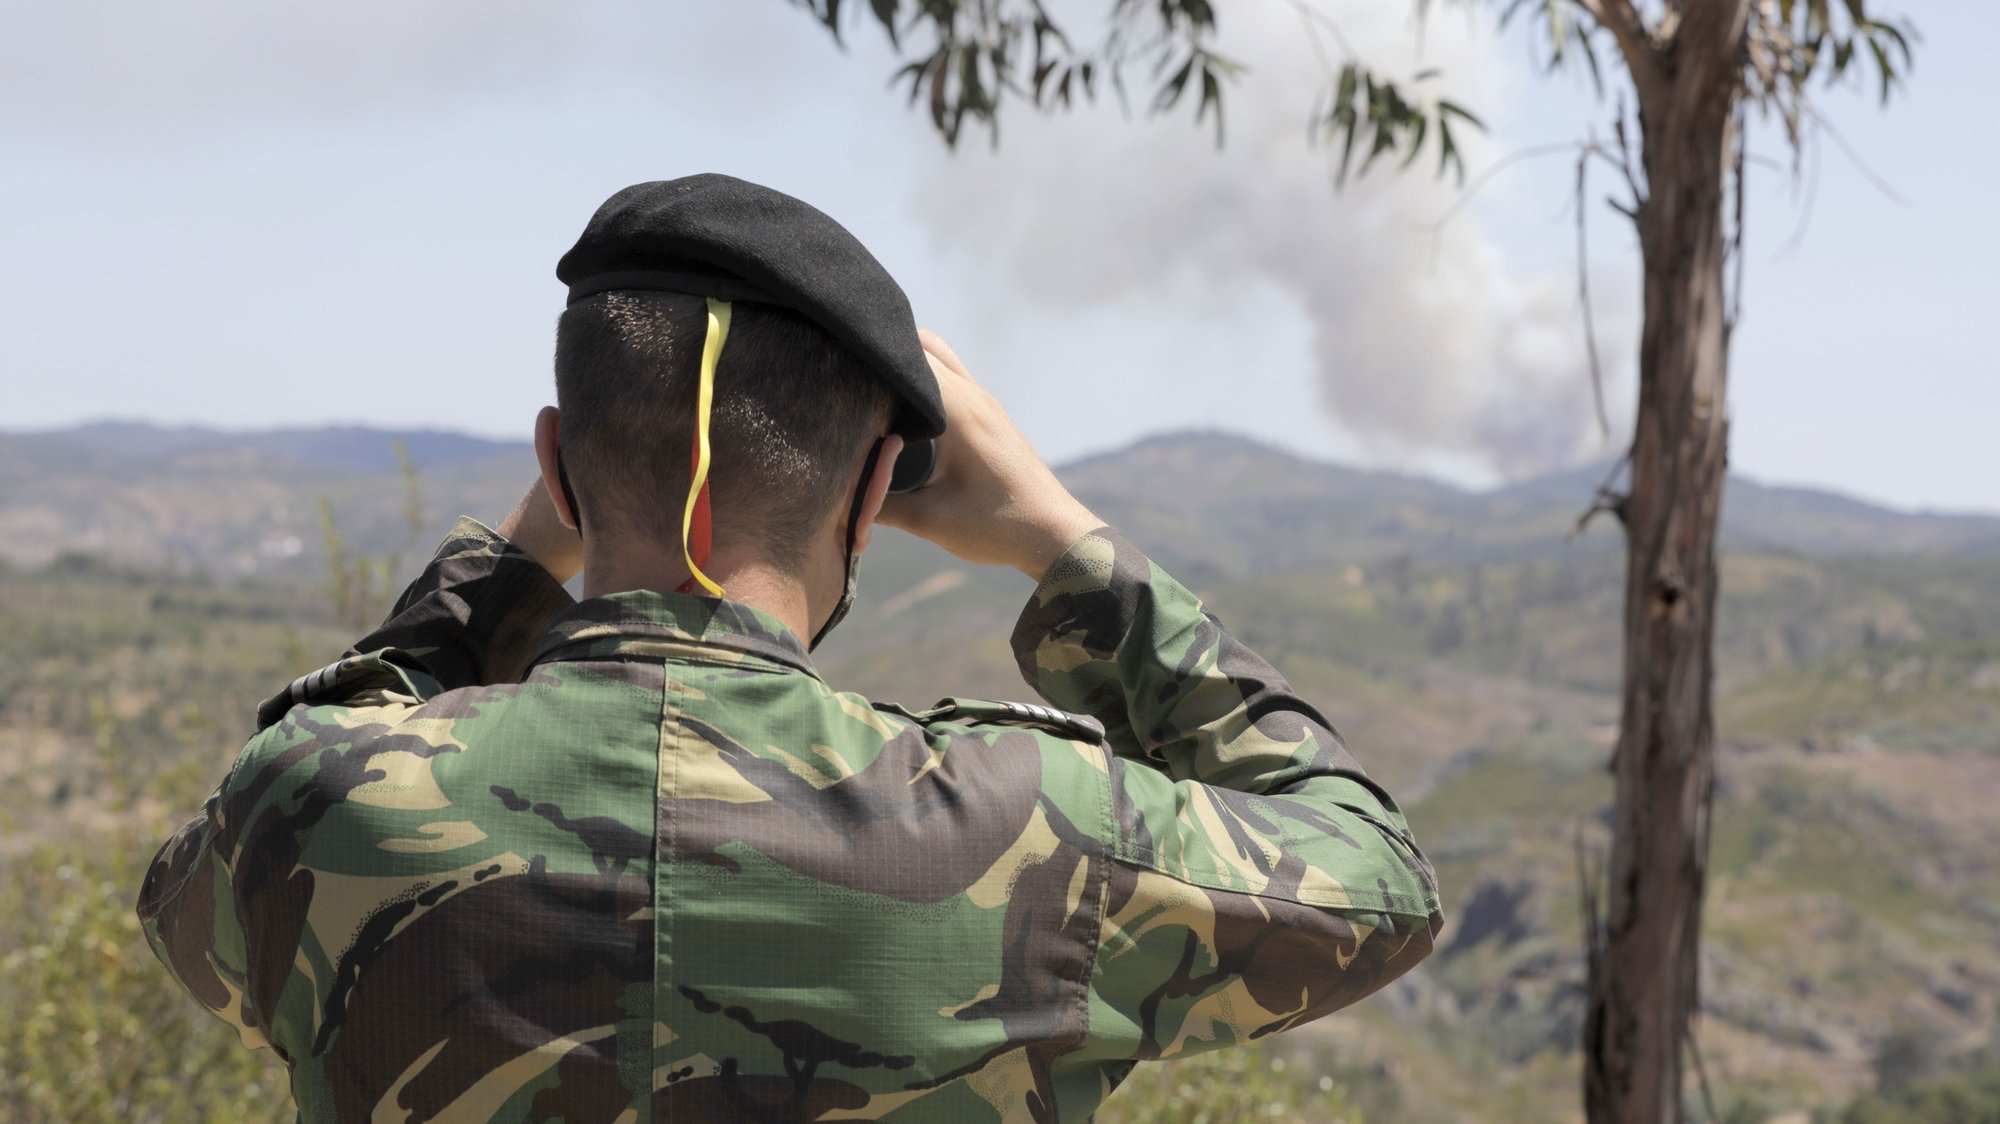 Um militar participa numa ação de patrulhamento do Exército de prevenção de incêndios florestais em Abrantes, 18 de julho de 2020. As Forças Armadas empenham até dia 19 de julho 216 militares distribuídos por 24 equipas (18 do Exército e 6 da Marinha), em ações de patrulhamento dissuasor, em 18 distritos de Portugal Continental. PAULO CUNHA/LUSA